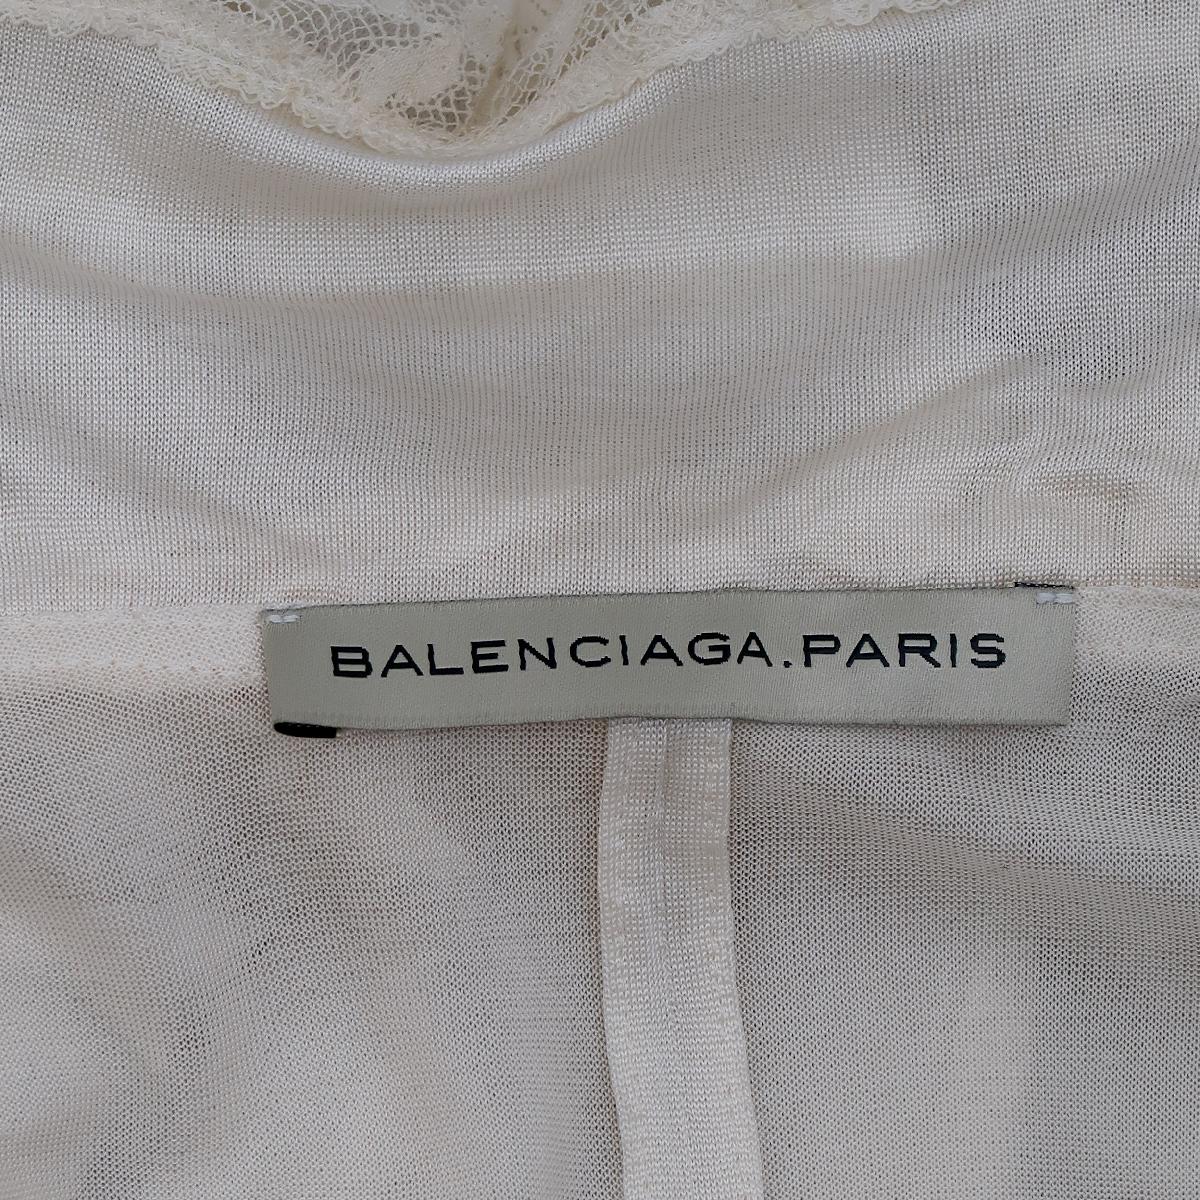 Balenciaga by Nicolas Ghesquière SS-2006 Silk Ruffle Top 1